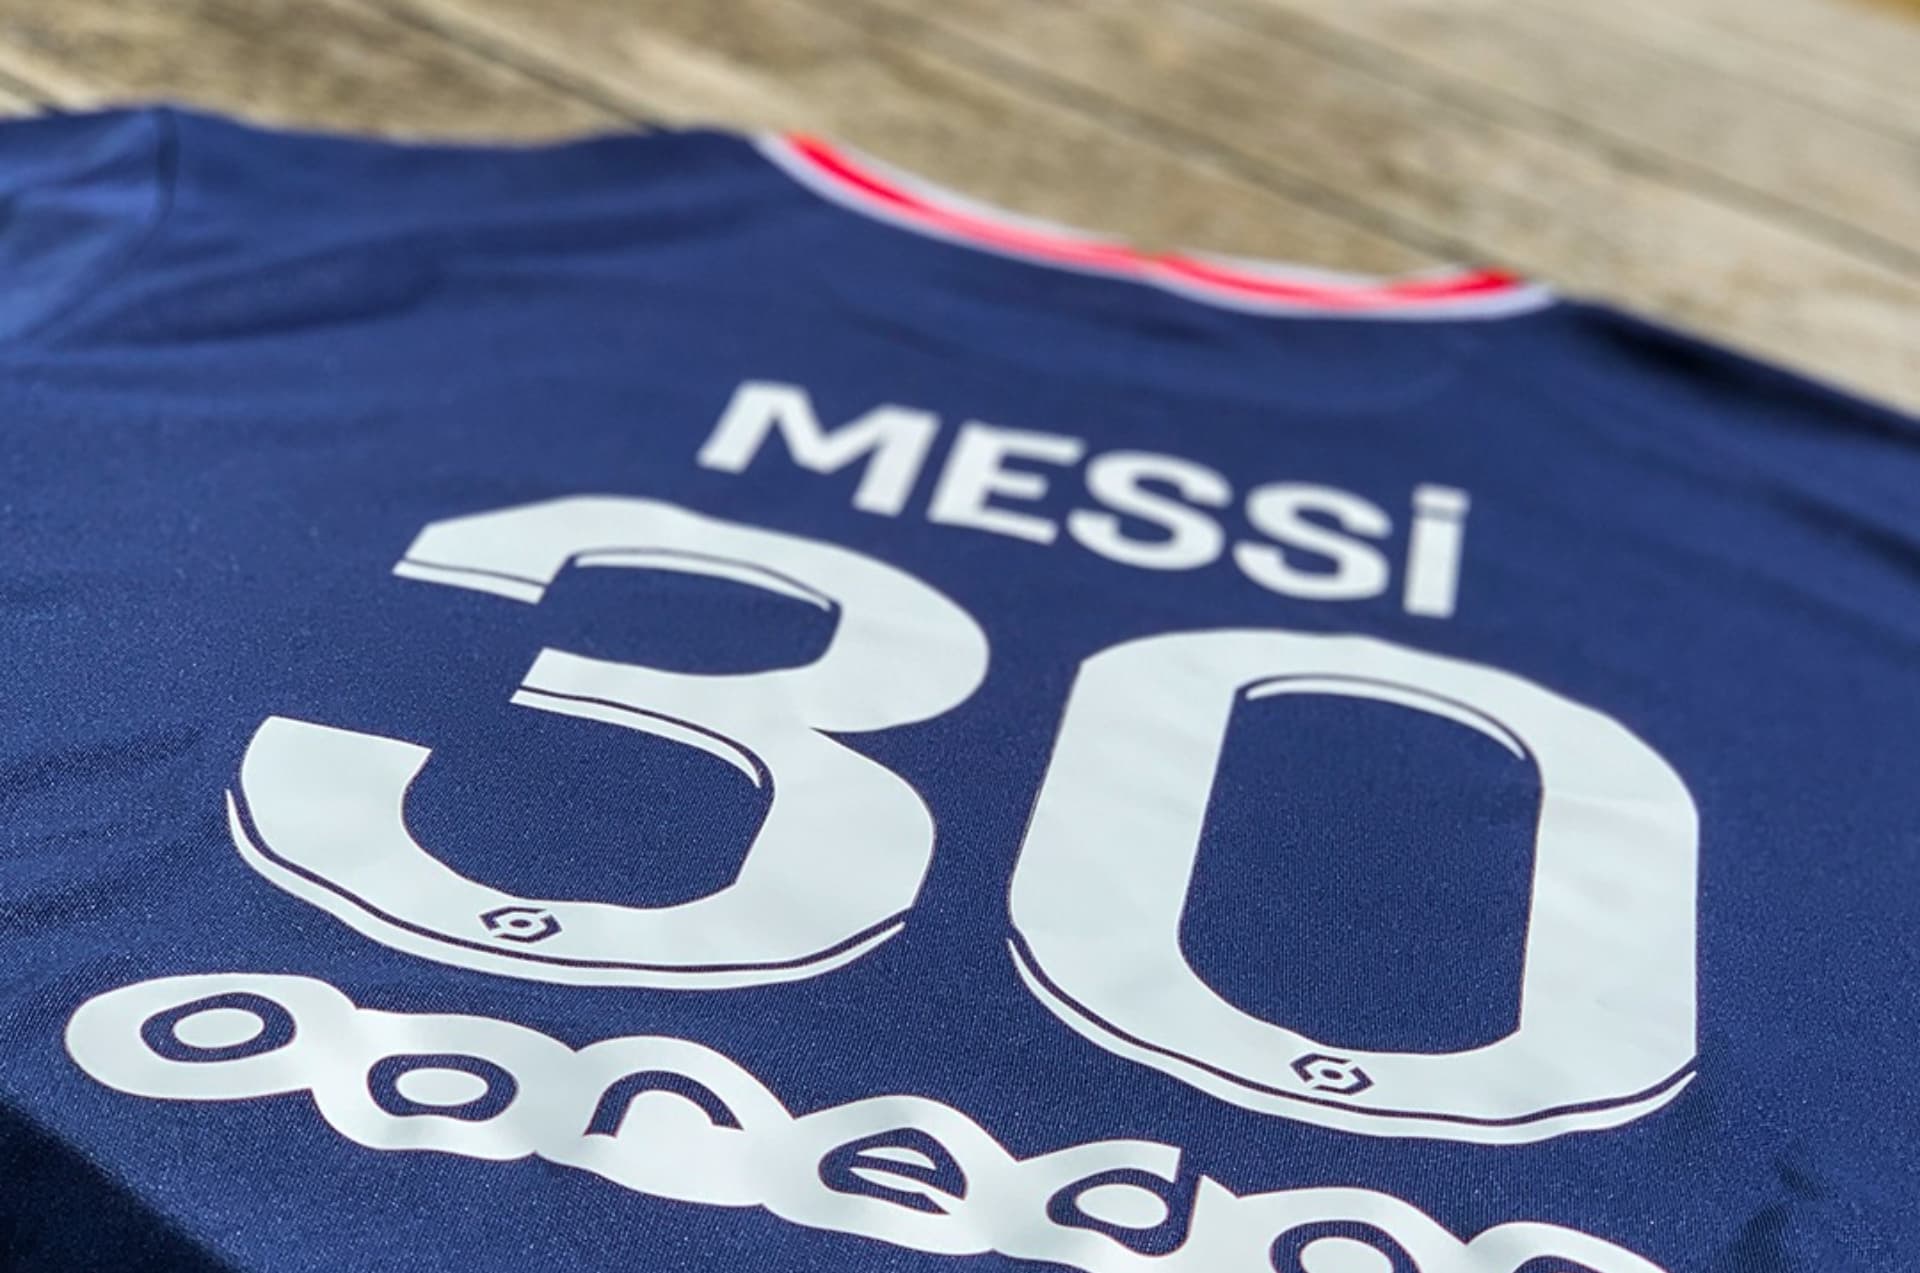 Estos son los productos de Lionel Messi en Paris Saint Germain